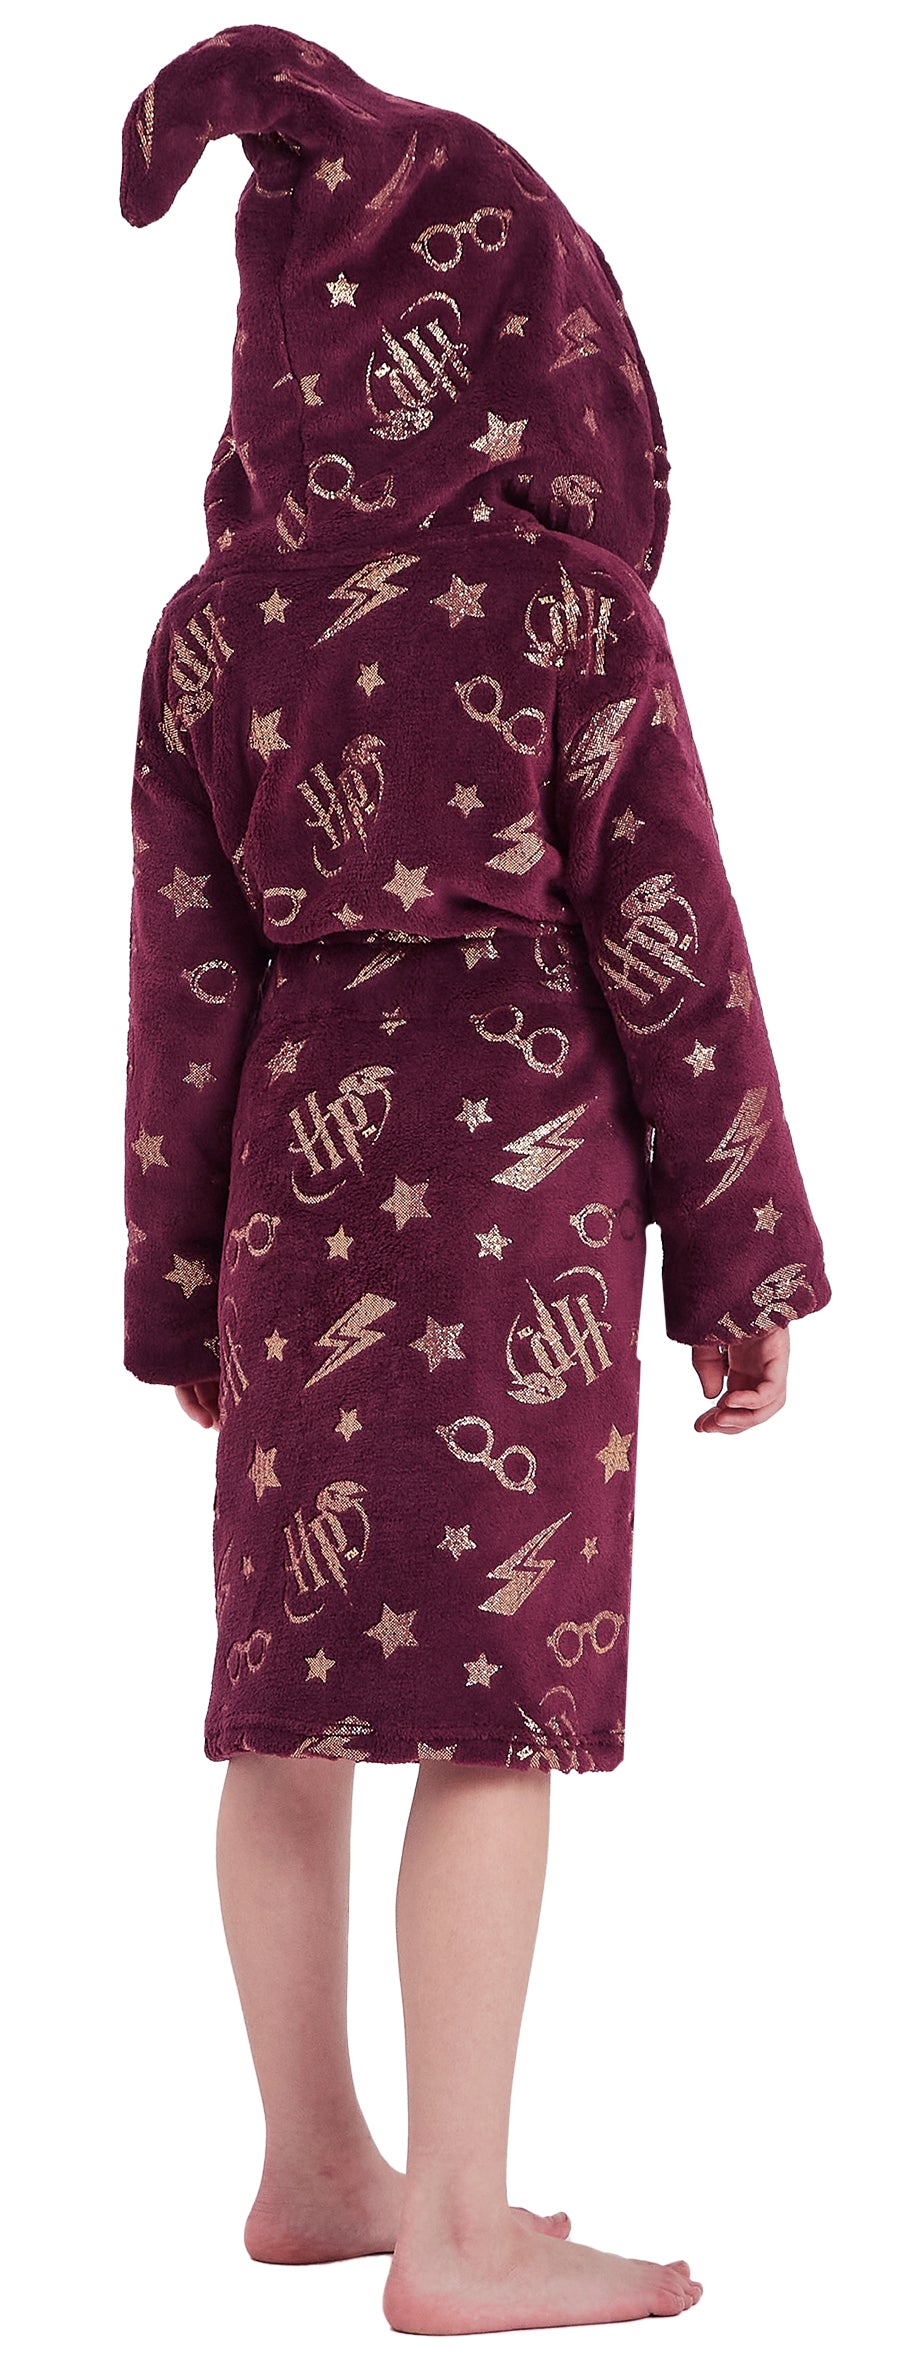 Girls Harry Potter Dressing Gown & Pyjama Set Bundle - Letter